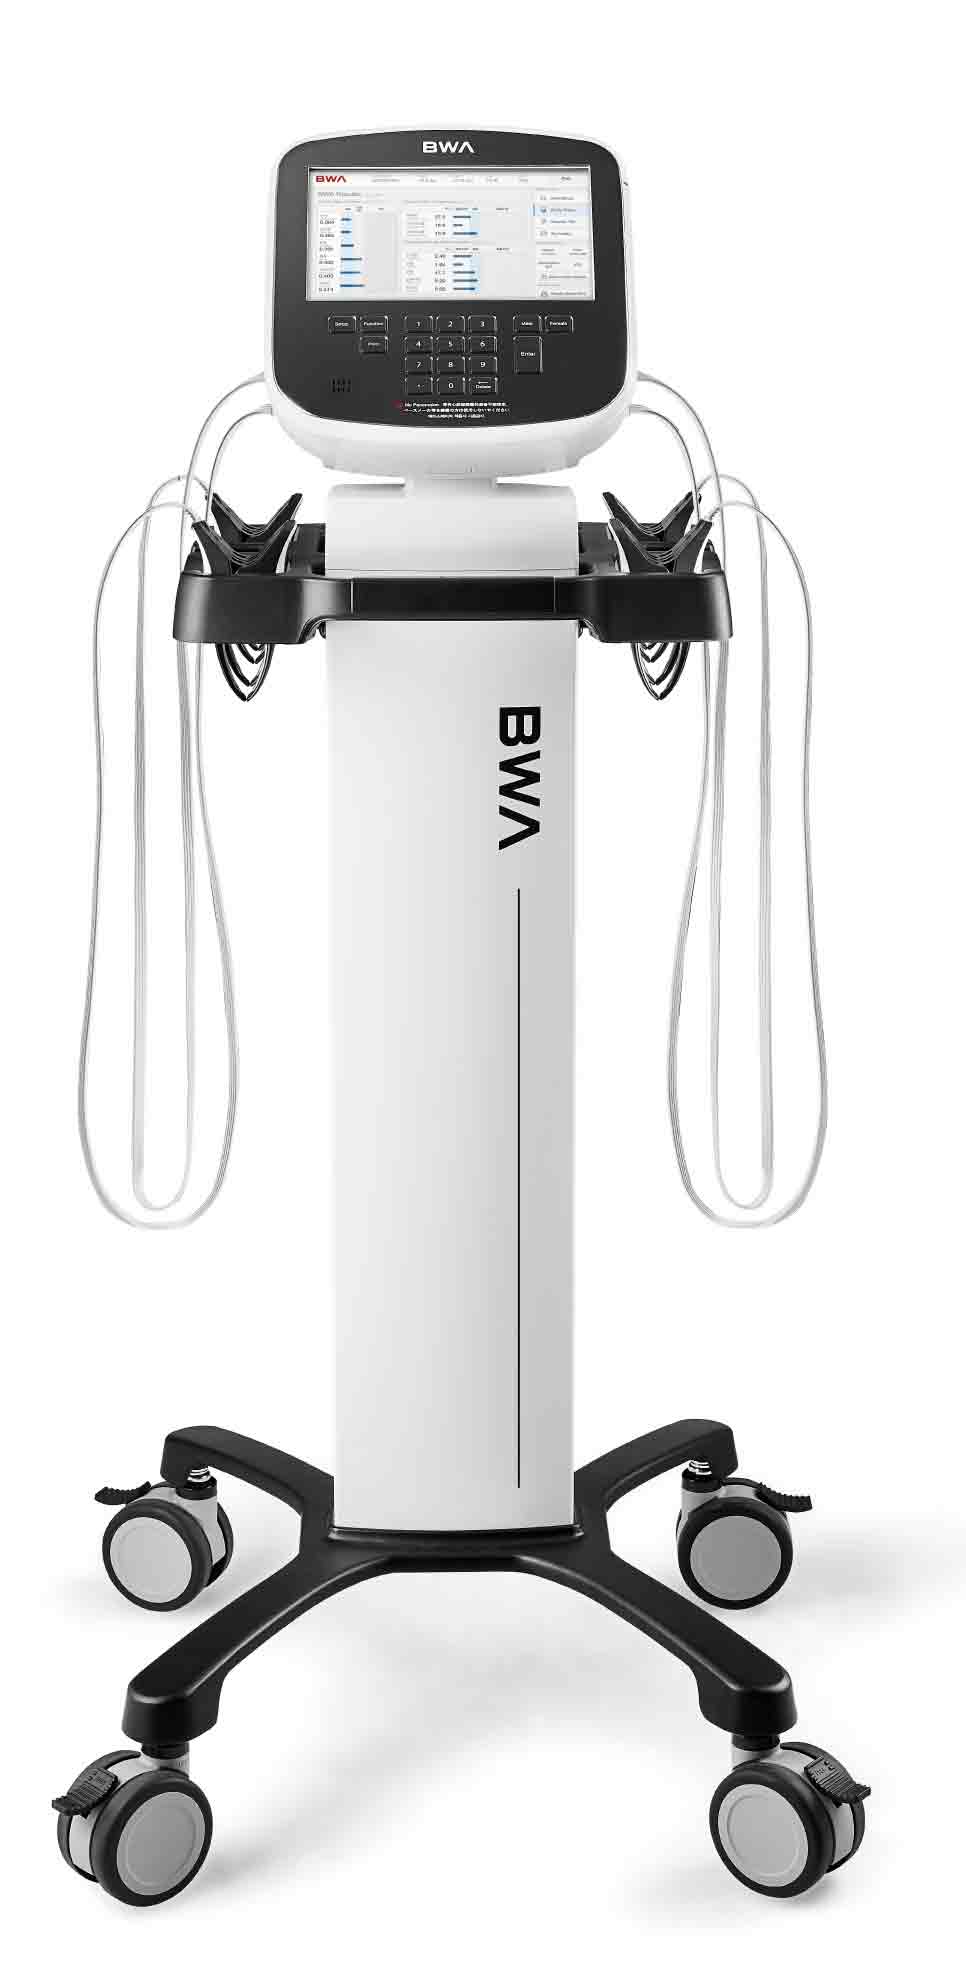 Inbody-BWA-2.0-body-water-analyser